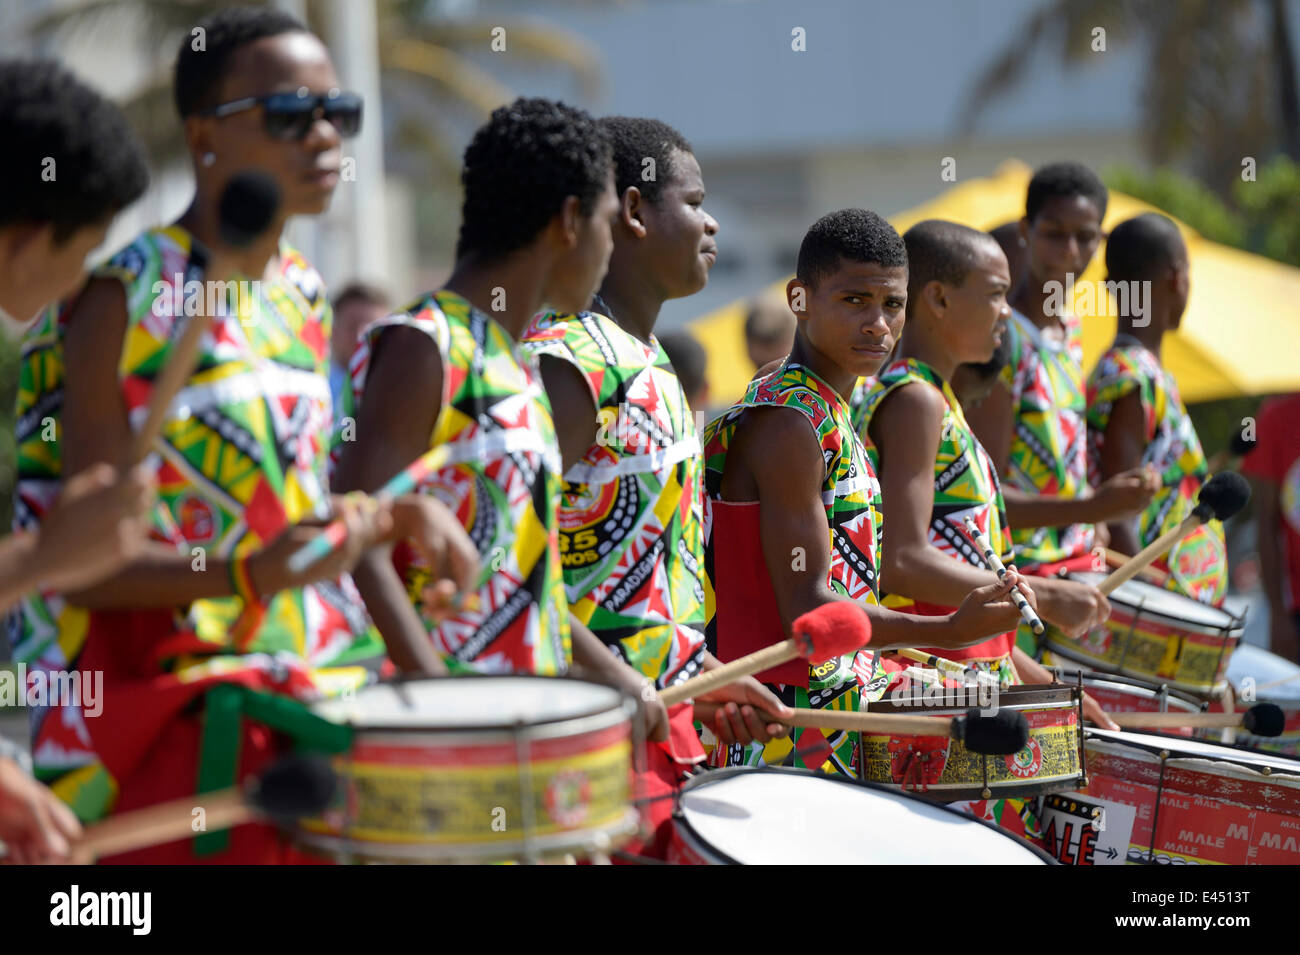 Trommler, bunt gekleidete Jugendliche von einem traditionellen Afro-brasilianischen Musikgruppe, Salvador da Bahia, Bahia, Brasilien Stockfoto